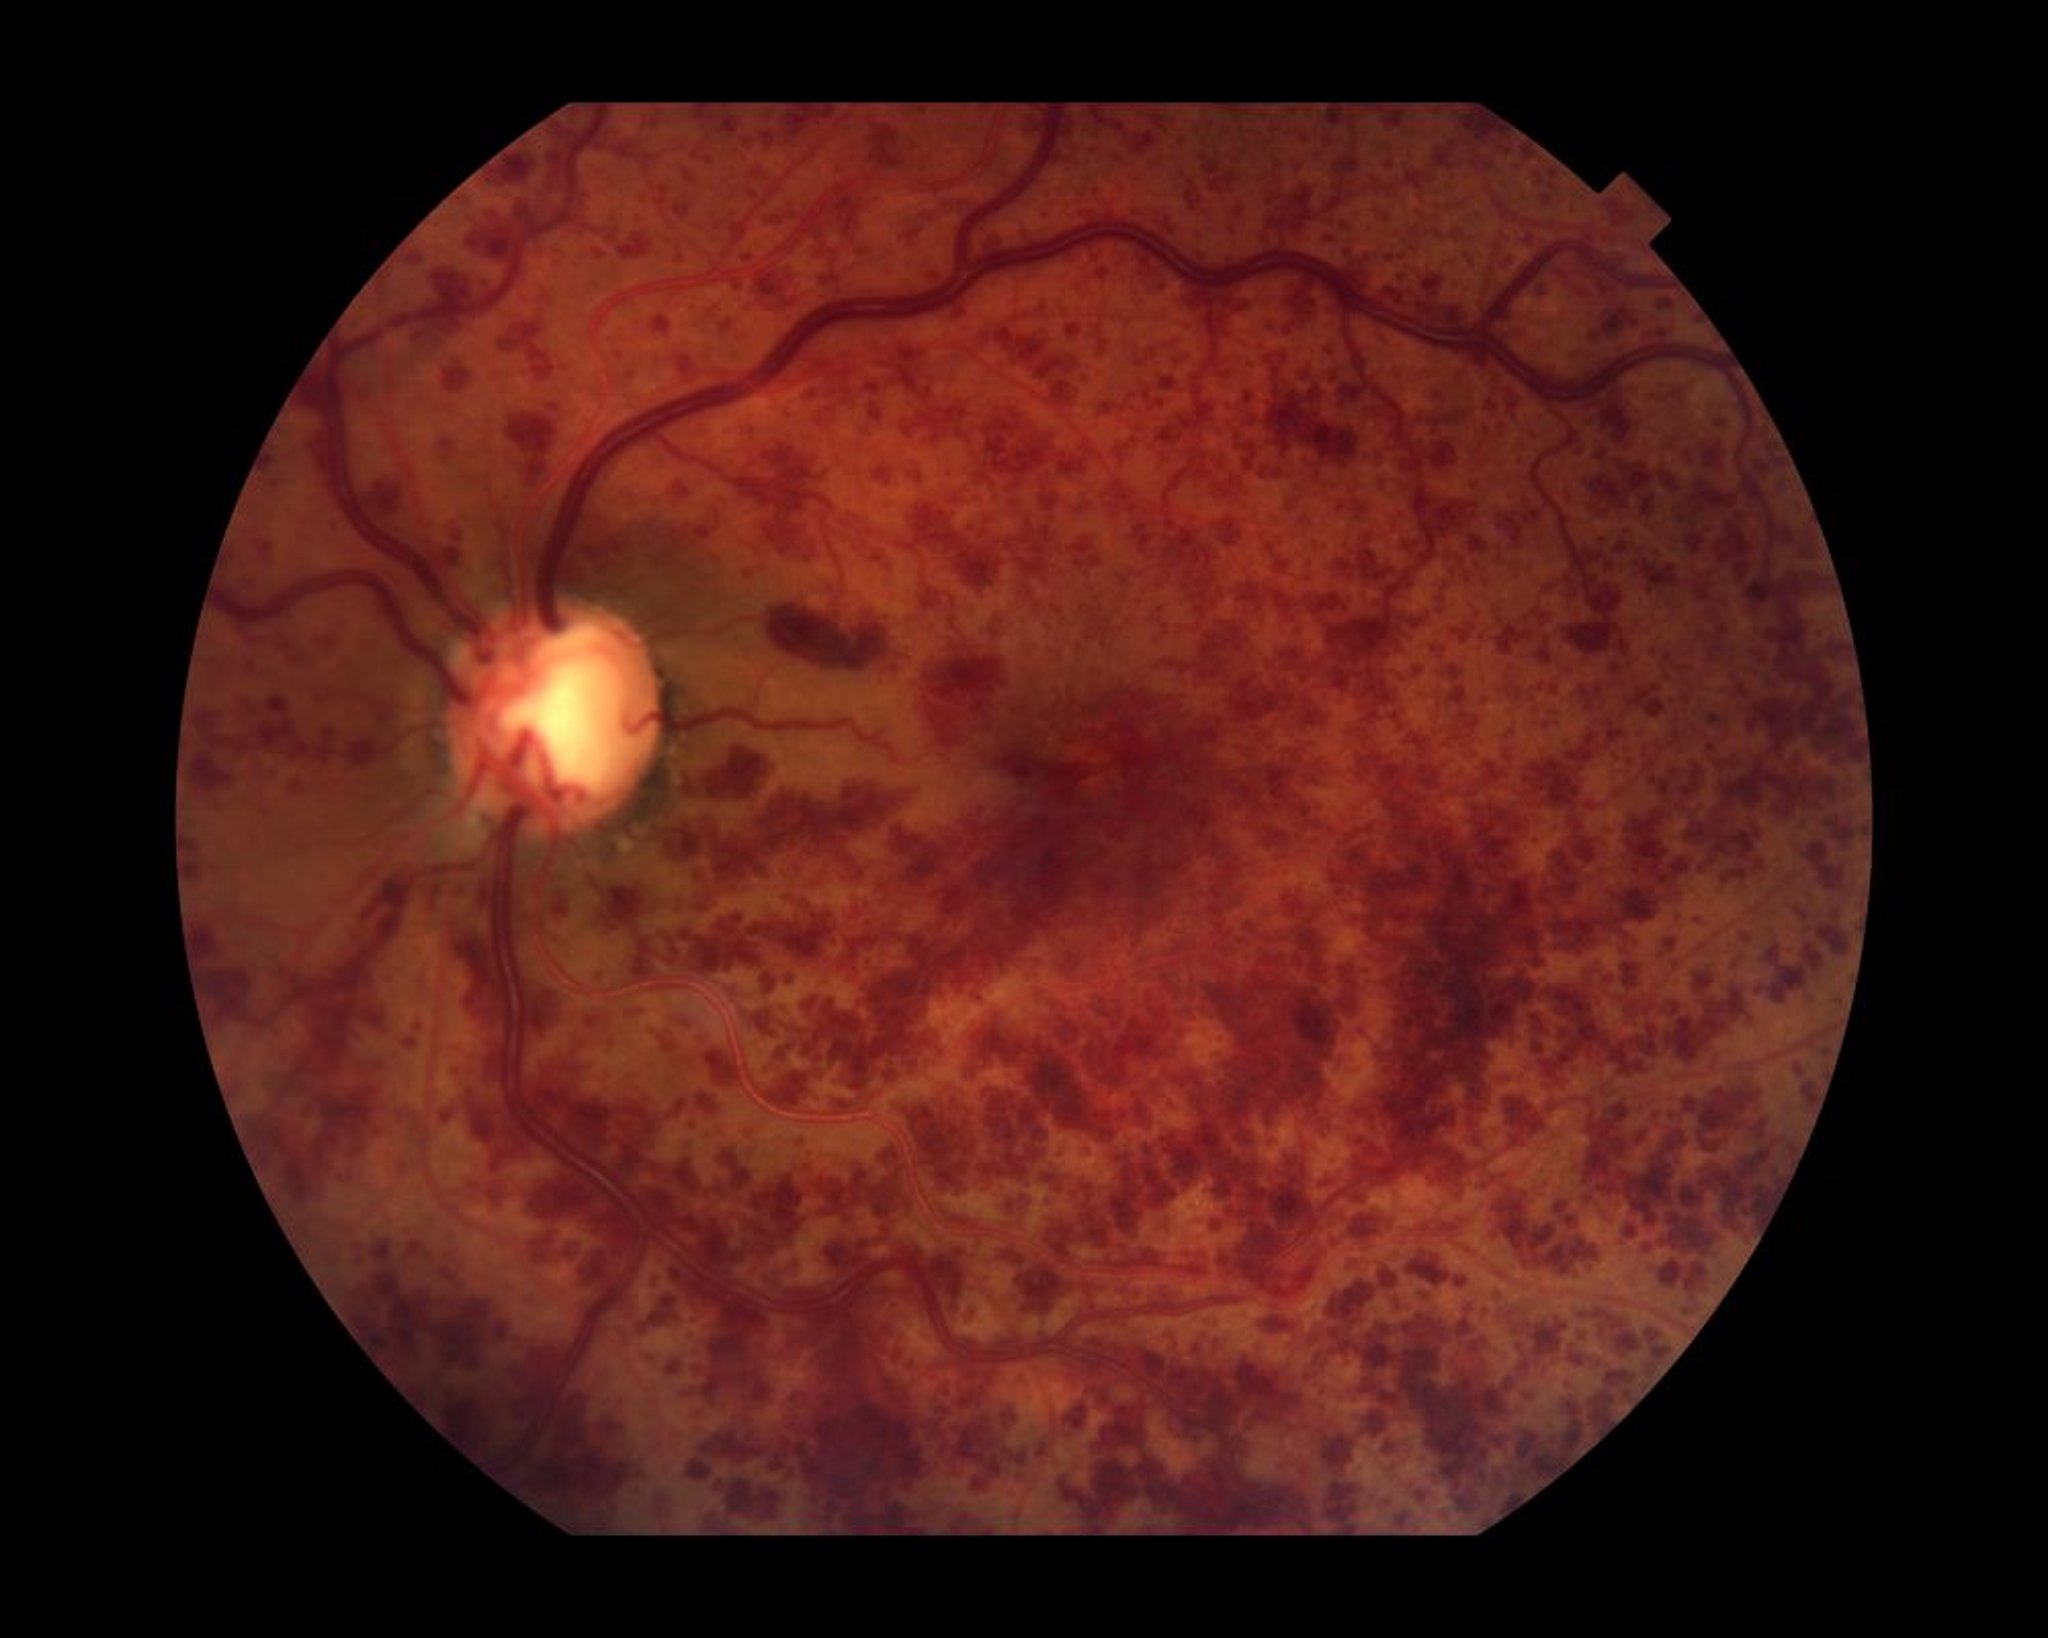 Oclusão da veia central da retina